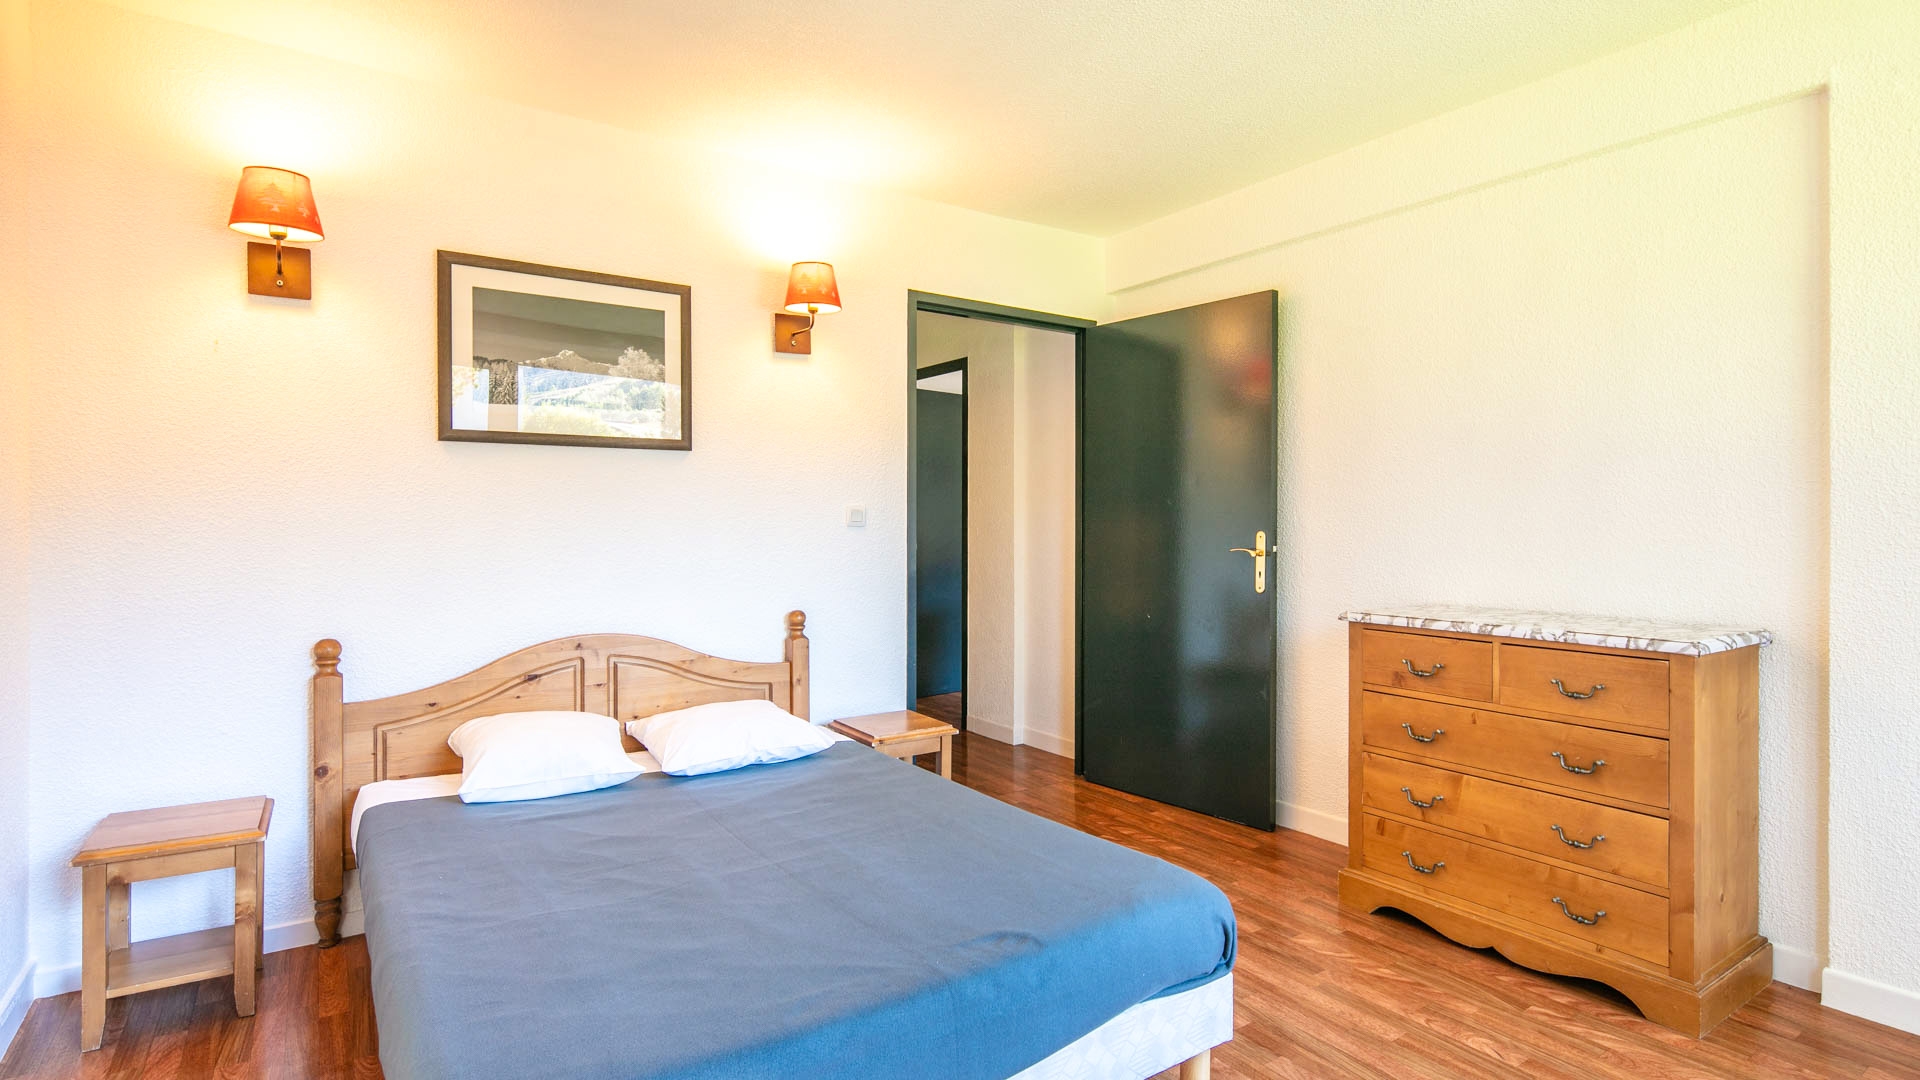 L'Edelweiss in Les 2 Alpes - Appartement für 8 Personen: Schlafbereich (Beispiel)